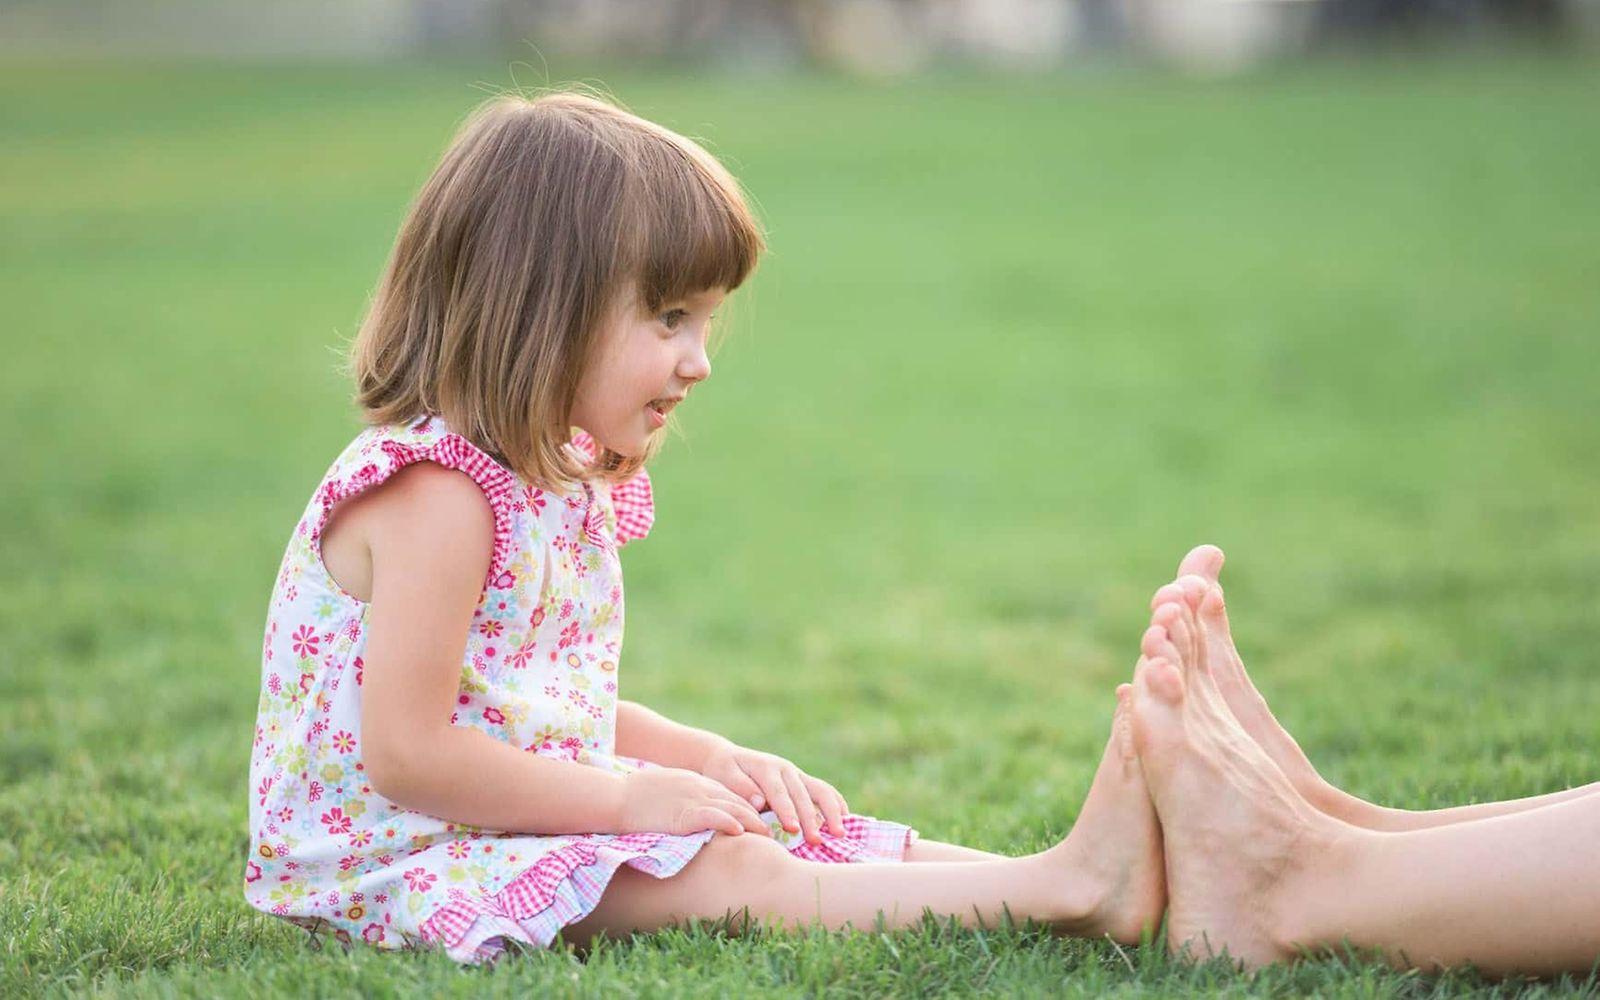 U7A Untersuchung: Ein kleines Mädchen vergleicht die Größe ihrer Füße mit der eines Erwachsenen.